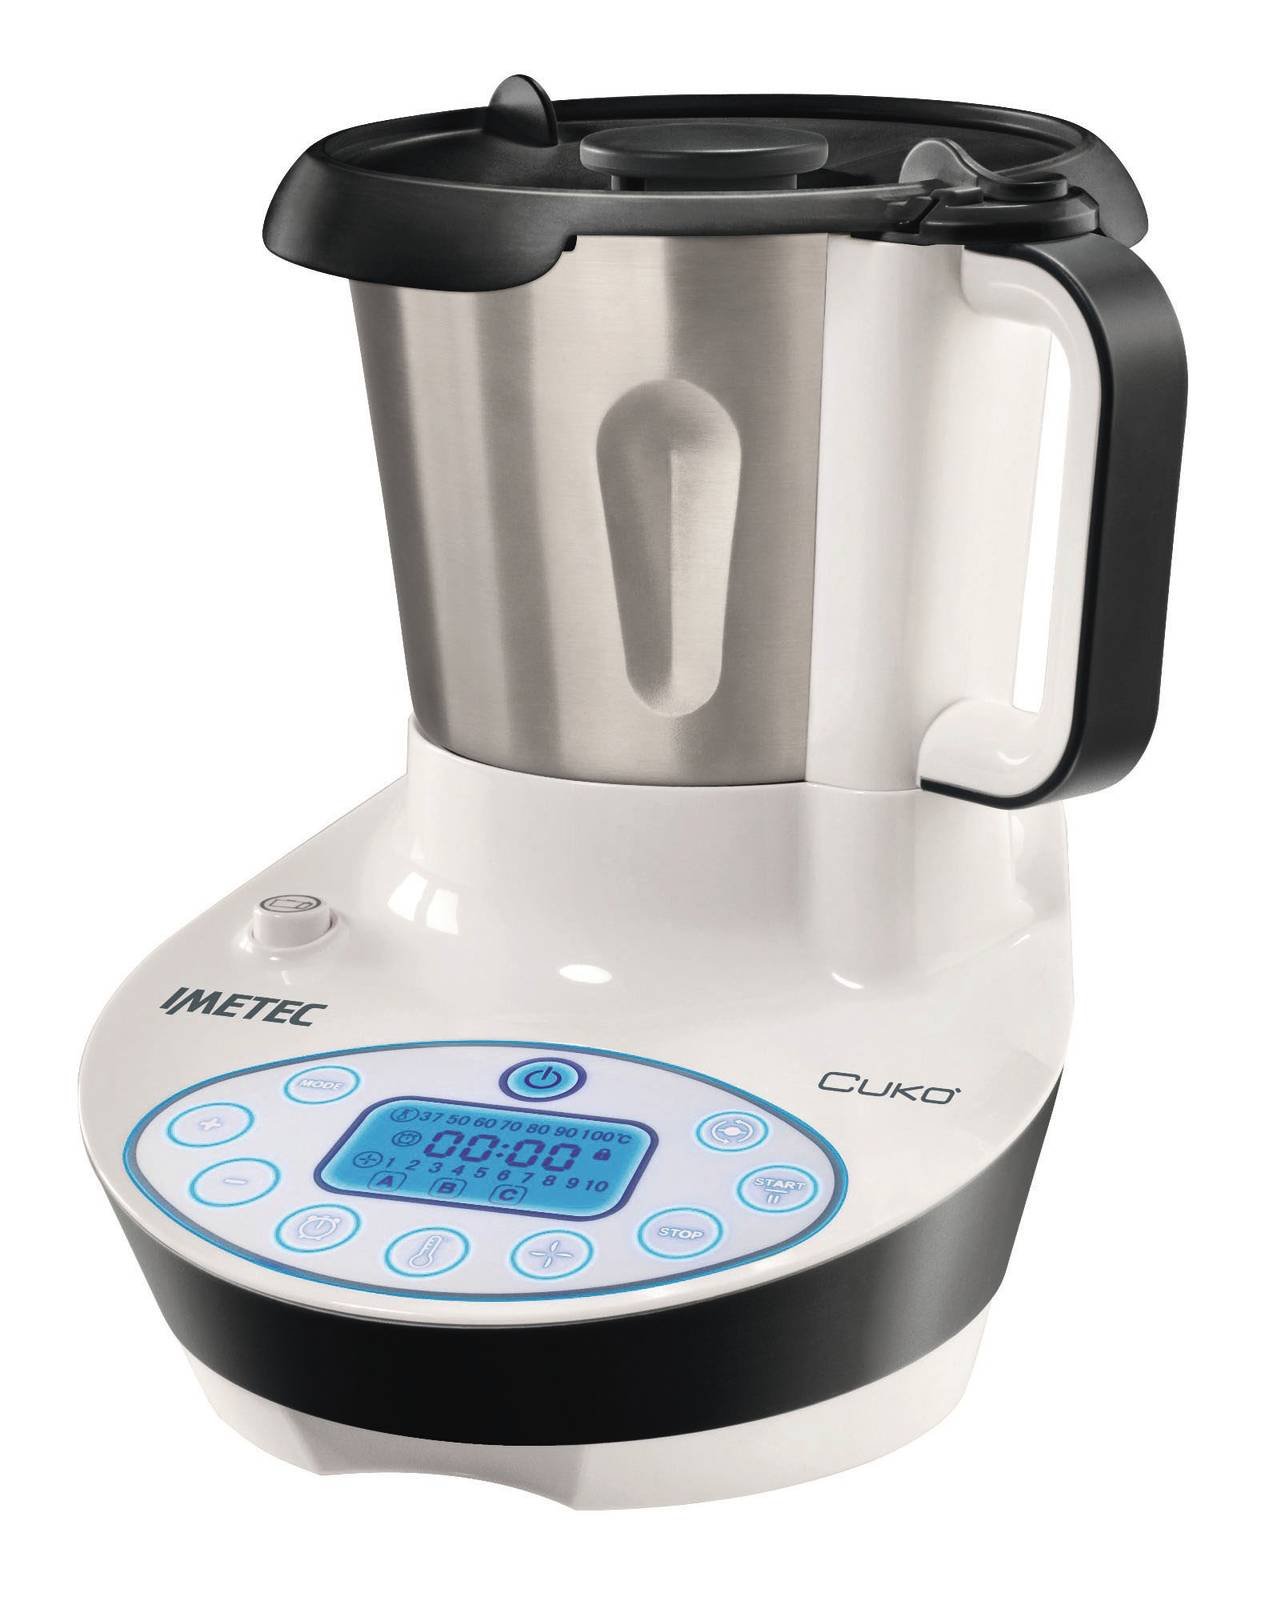 bilancia integrata 31 funzioni Robot da cucina multifunzione da 3,5 litri con ricettario incluso 1500 W senza BPA nero acciaio inossidabile Taurus Foodie 